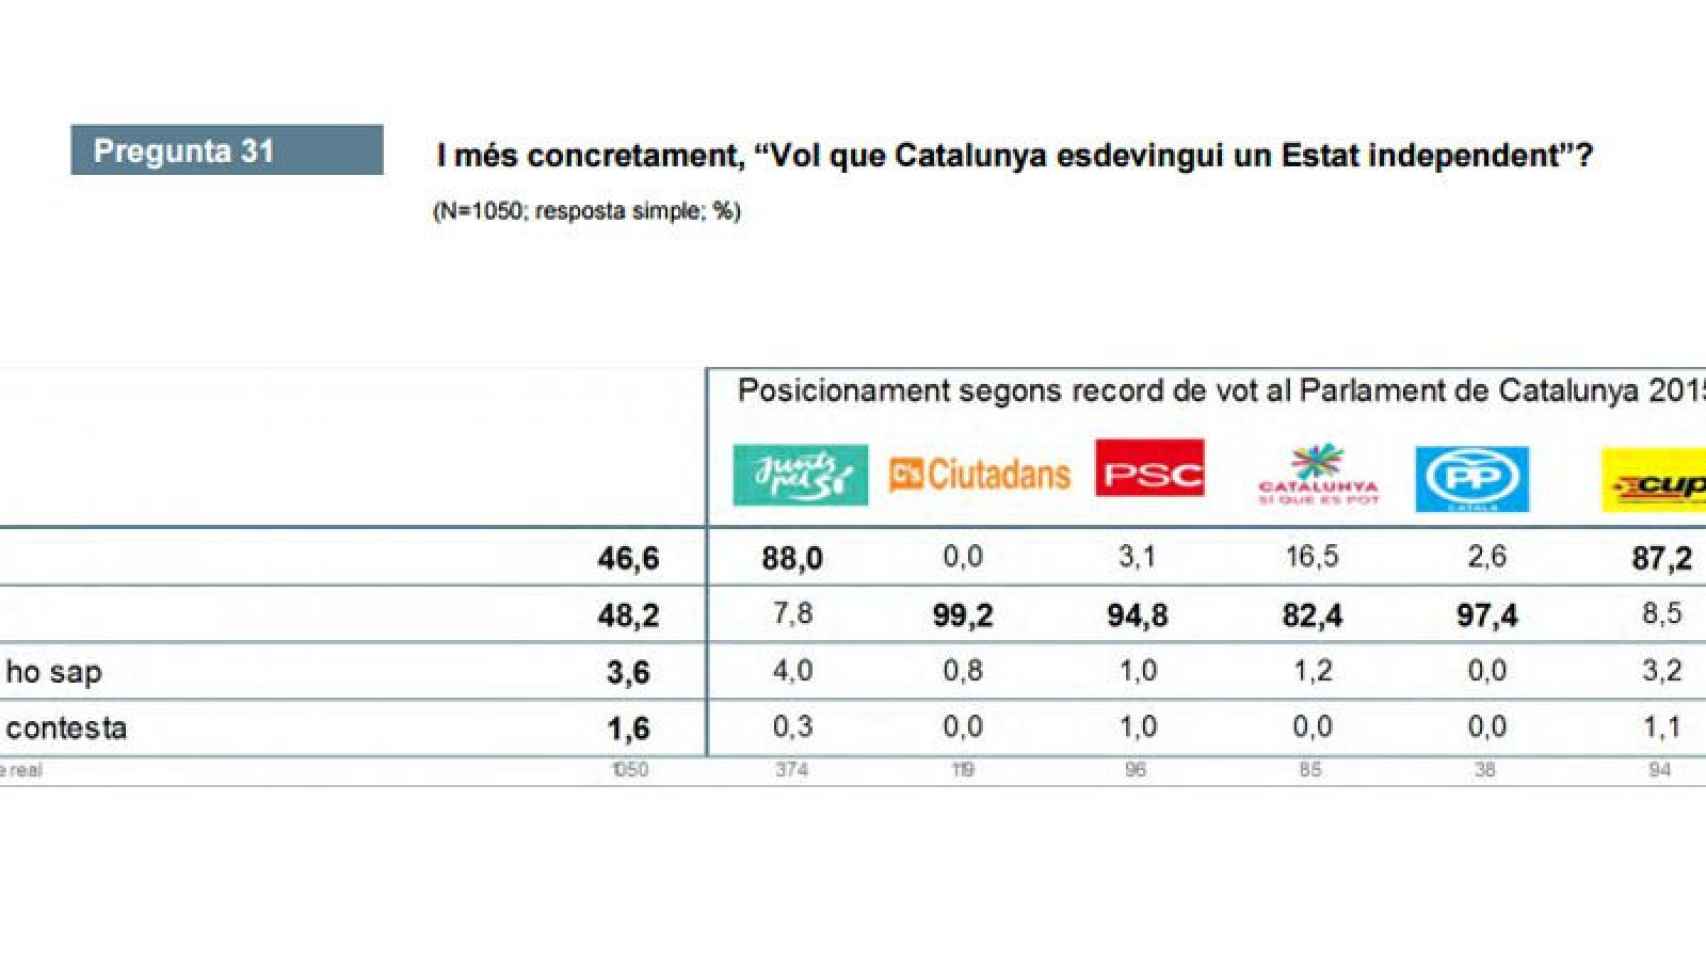 El CEO ratifica la división de la sociedad catalana en relación a la independencia